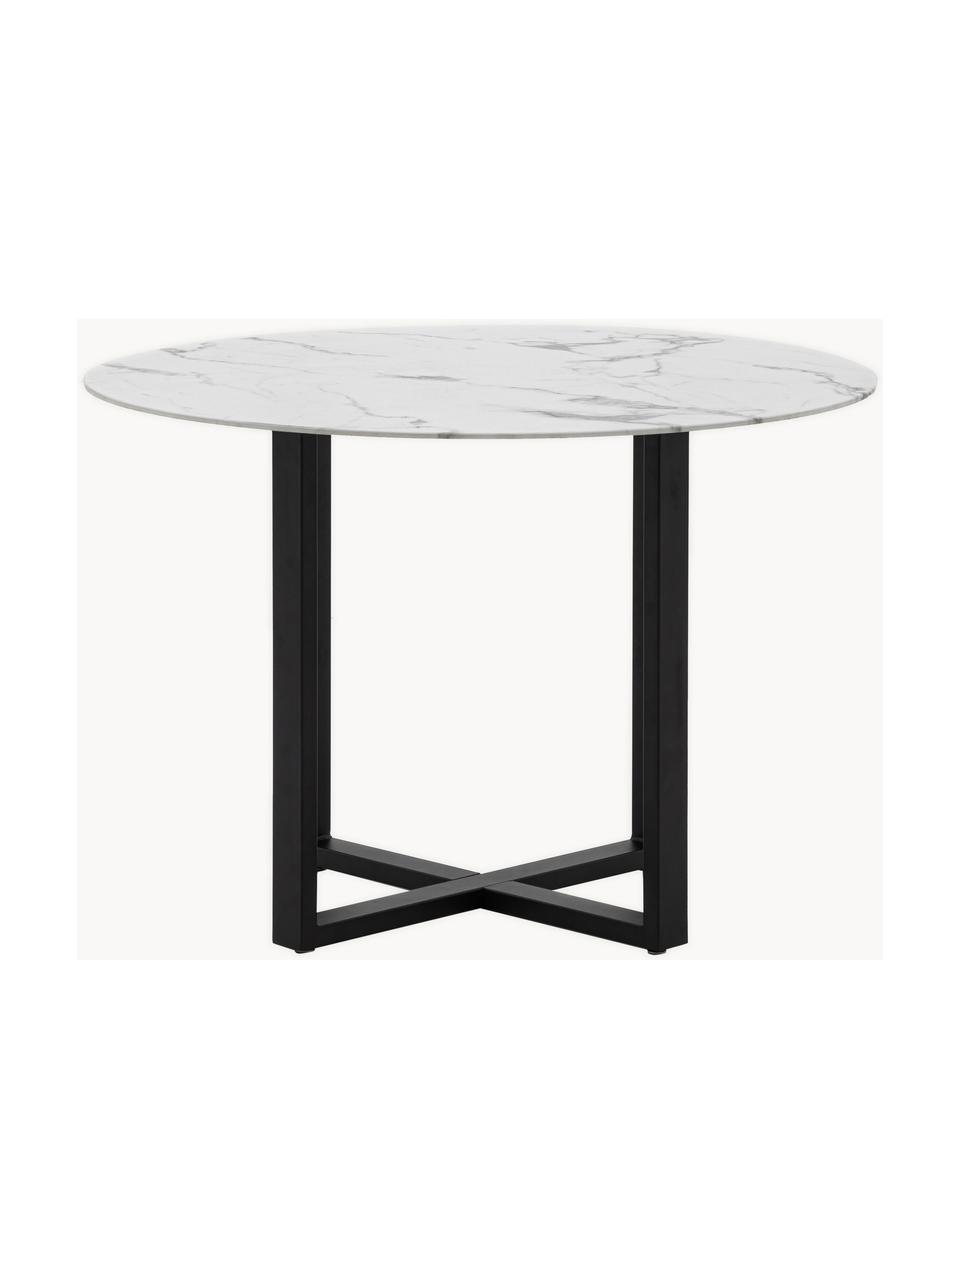 Okrúhly jedálenský stôl s mramorovým vzhľadom Connolly,  Ø 110 cm, Mramorový vzhľad, biela, čierna, Ø 110 cm